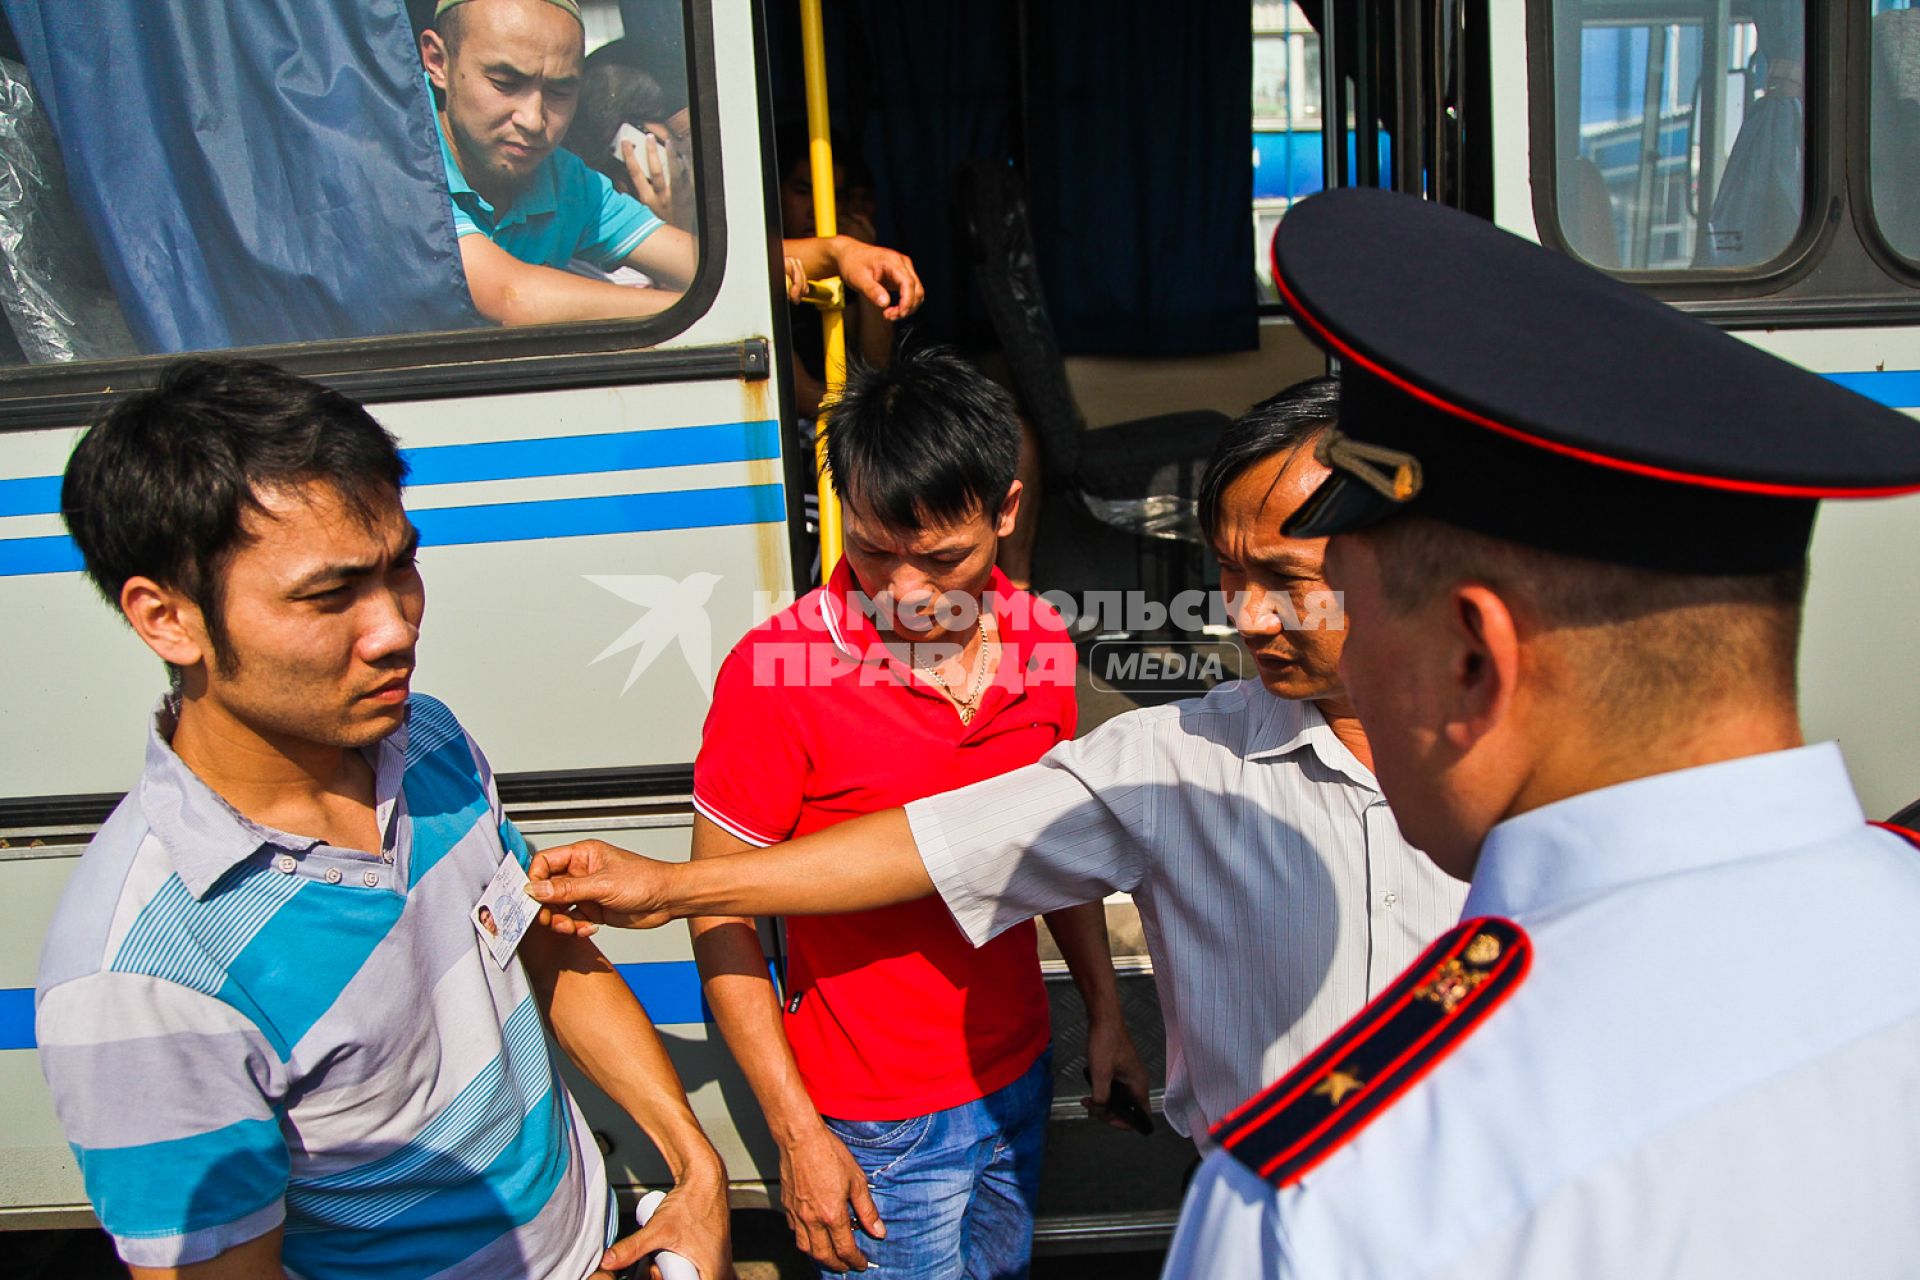 Вьетнамец демонстрирует полицейскому разрешение на торговлю своего знакомого